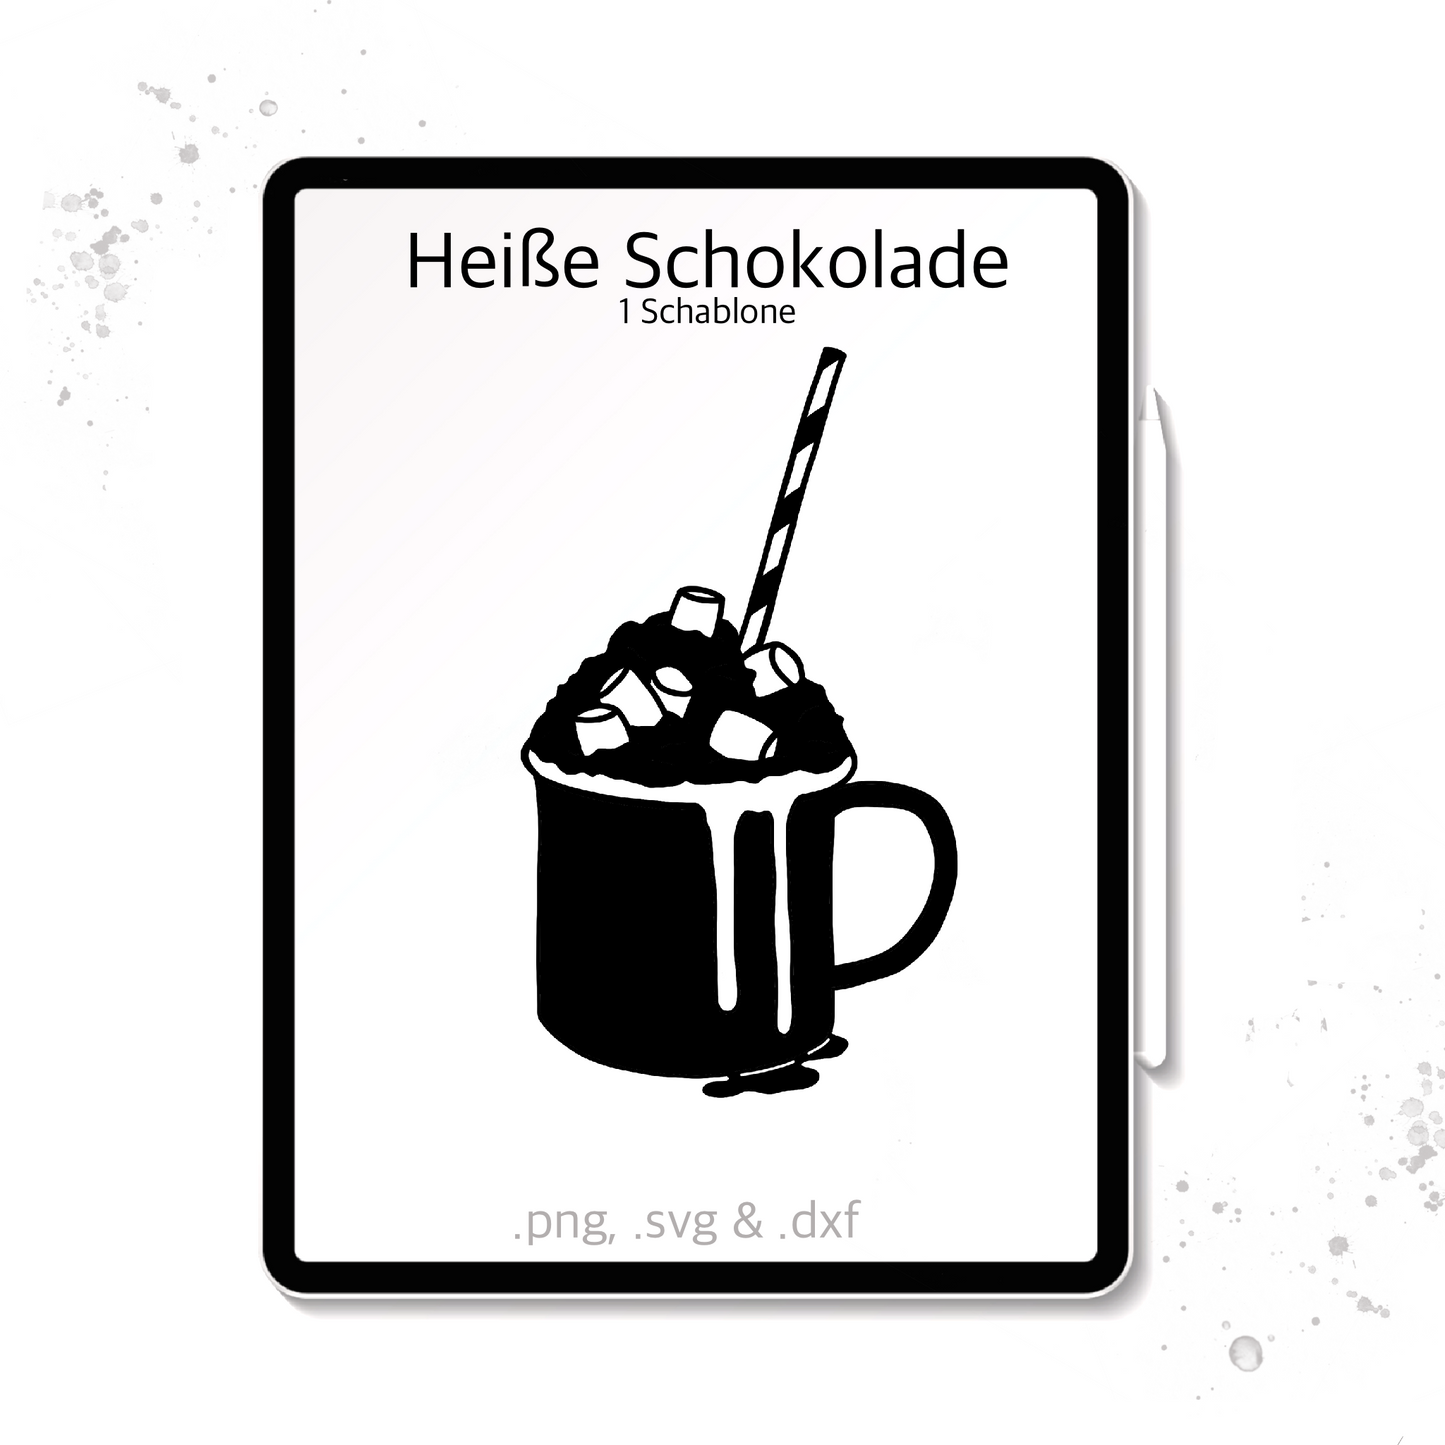 Plotterdatei / Laserdatei Schablonen "Heiße Schokolade" (.dxf, .svg und .png)